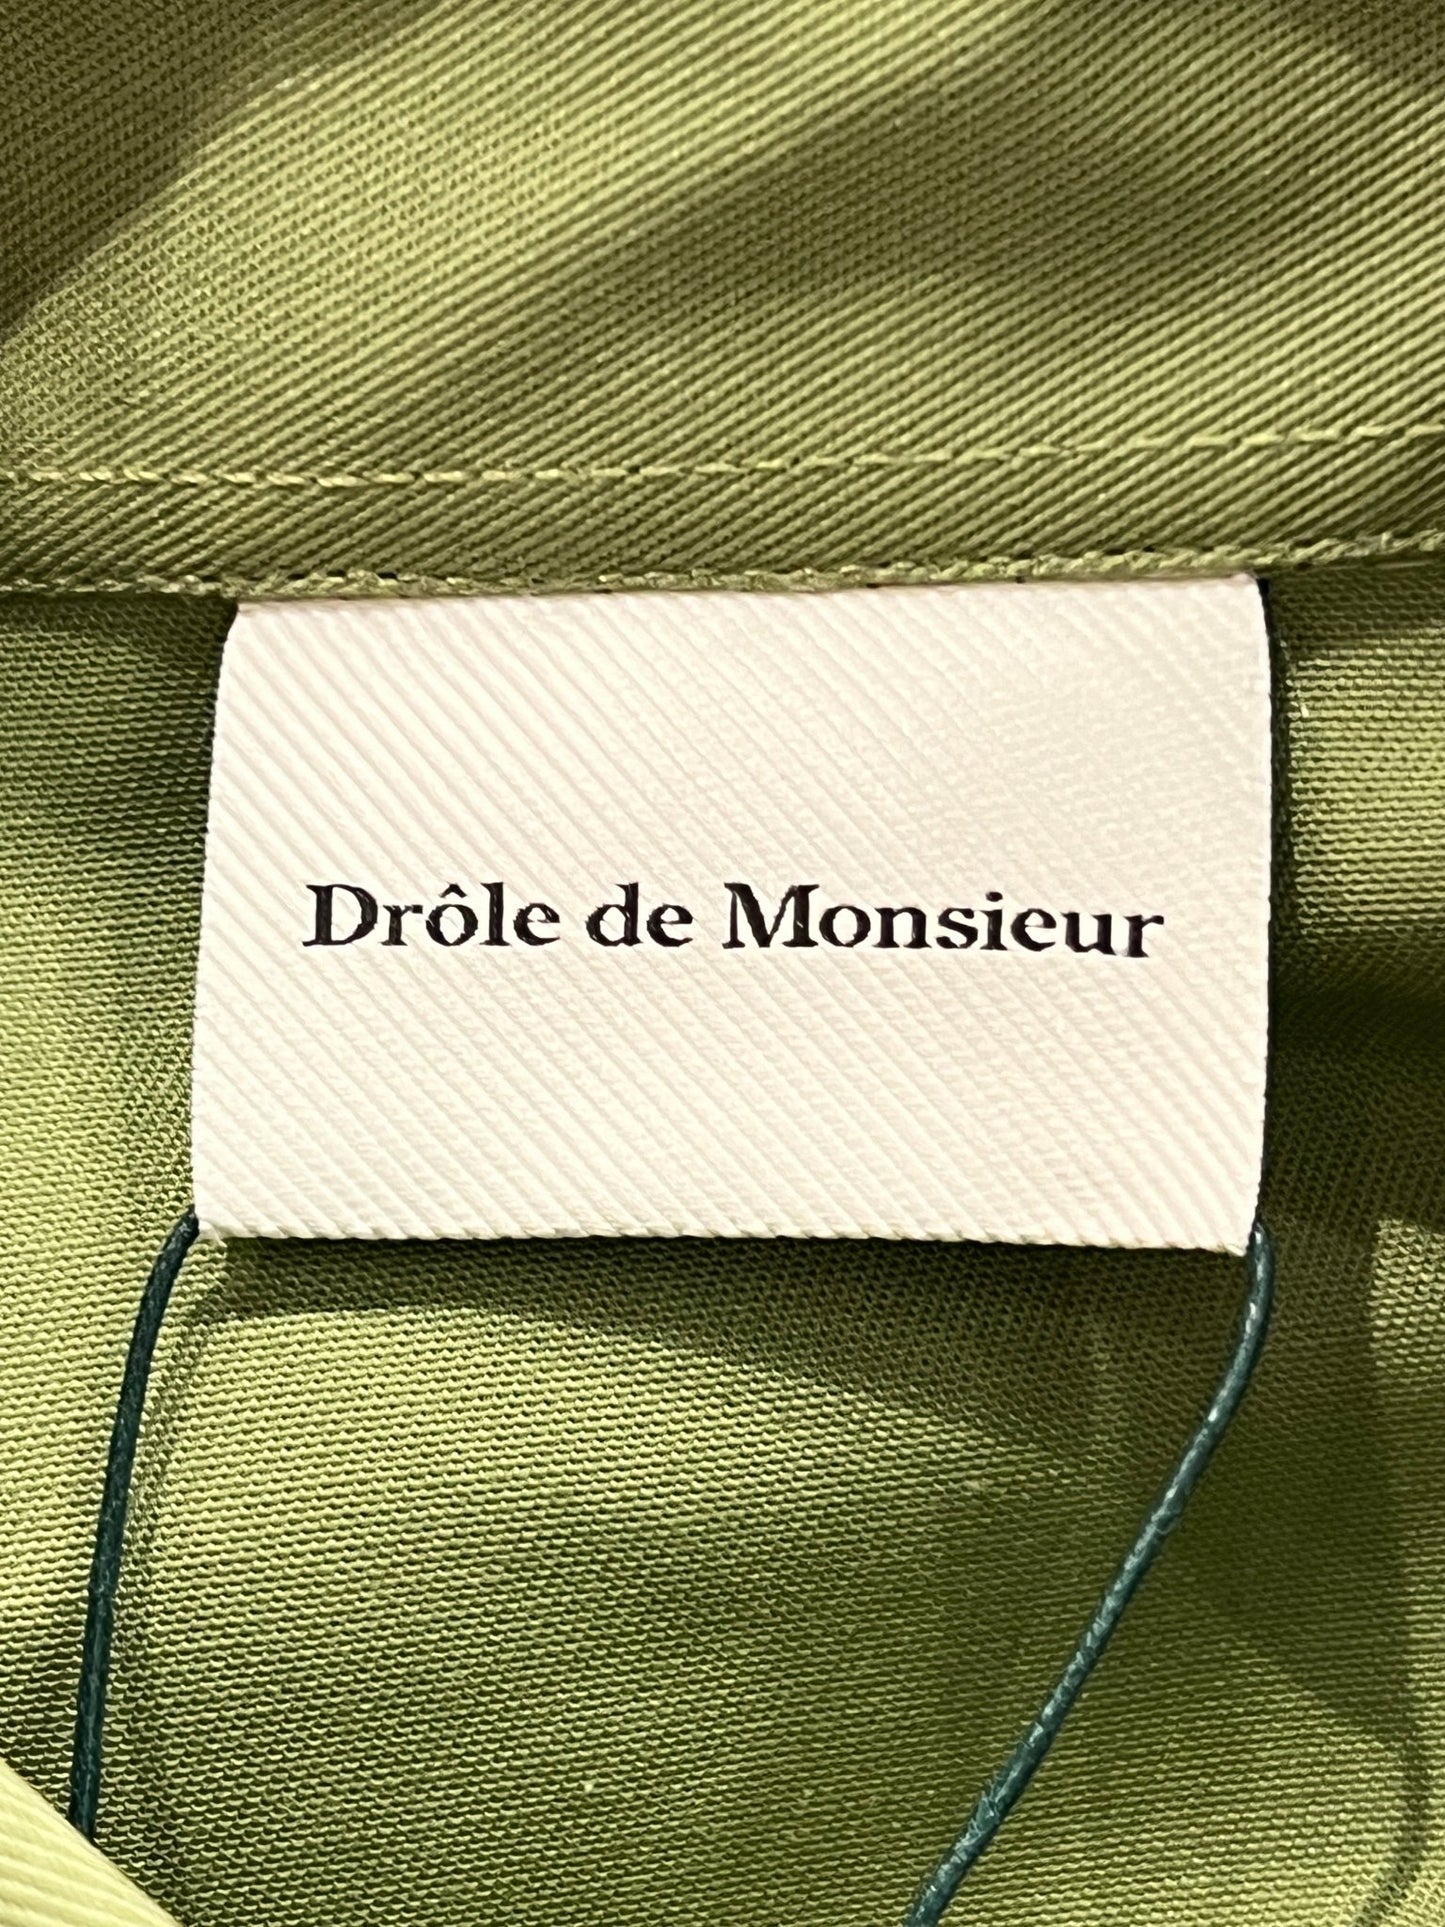 Clothing label with the DROLE DE MONSIEUR SHIRT D-SH128-PL004 LA CHEMISE SLOGAN LKK shirt stitched onto a khaki cotton blend shirt.